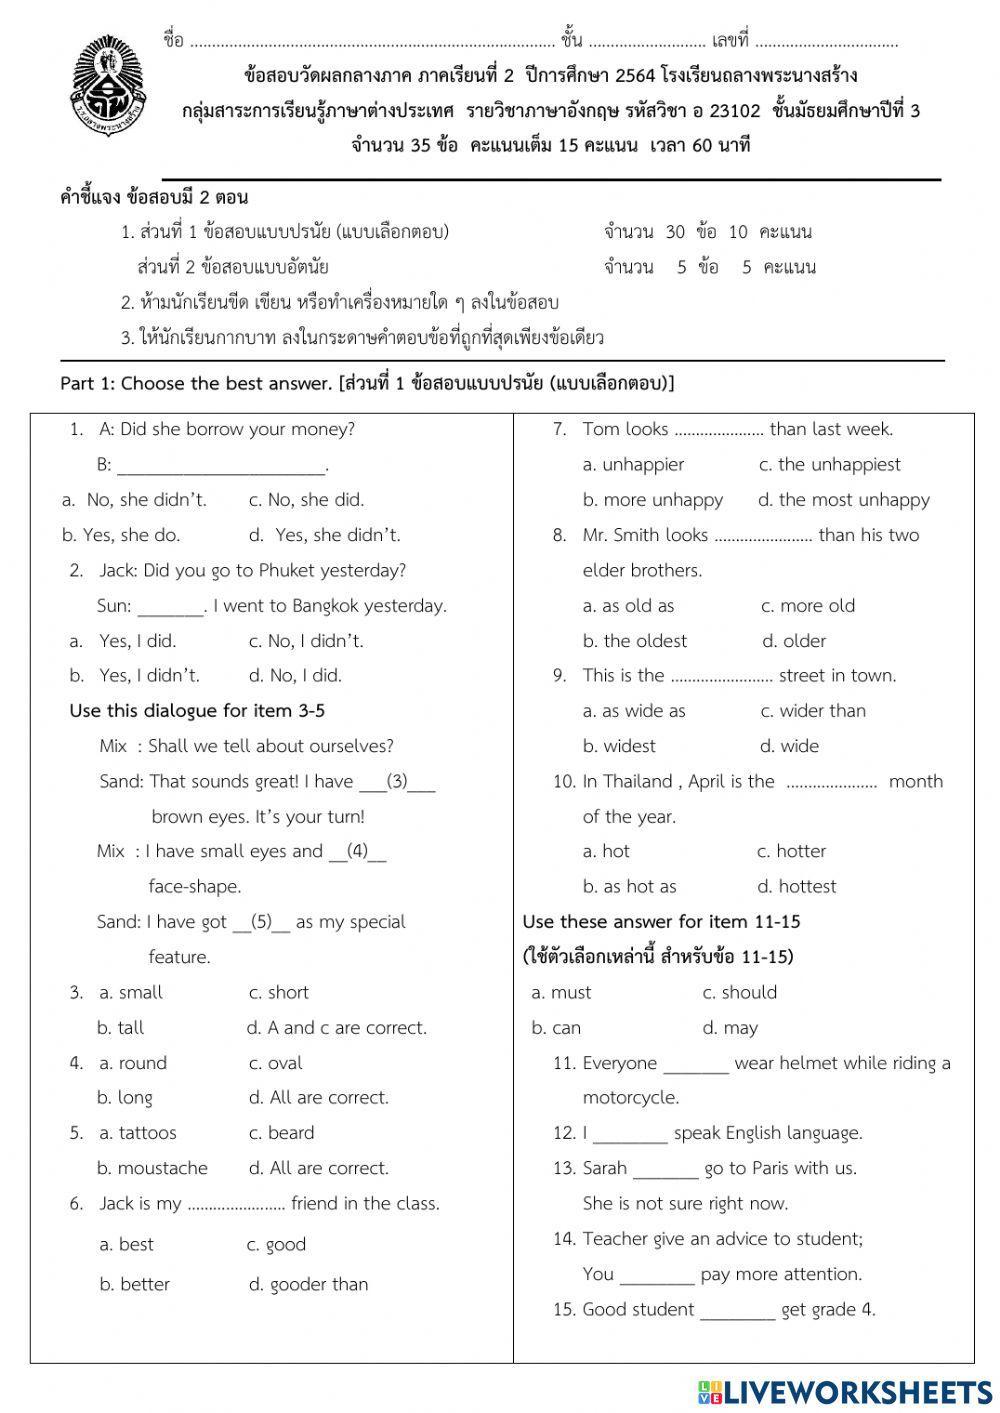 ข้อสอบกลางภาค 2-2564 วิชาภาษาอังกฤษ